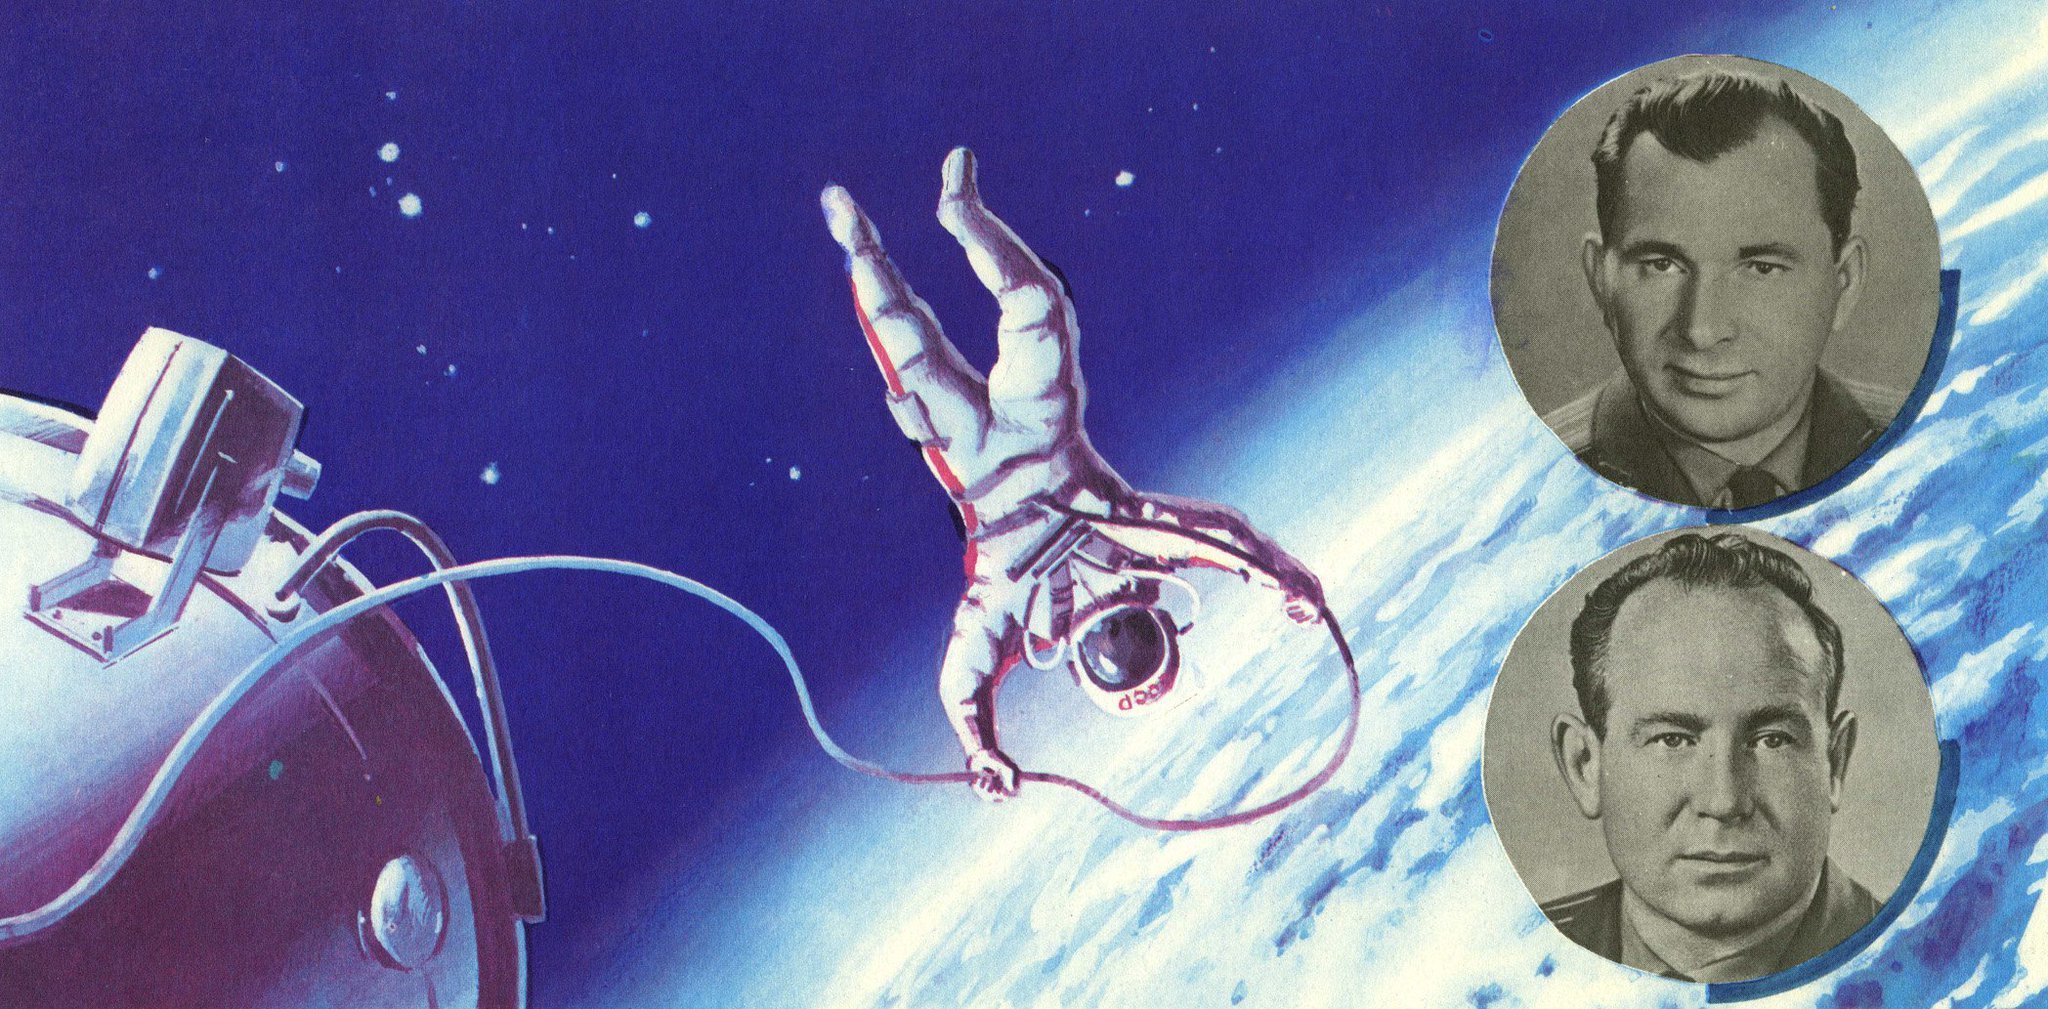 Первым вышел в космос 6. Восход 2 космонавты Леонов и Беляев. Космонавты Леонов и Беляев в открытом космосе. Корабль "Восход-2" с Алексеем Леоновым.